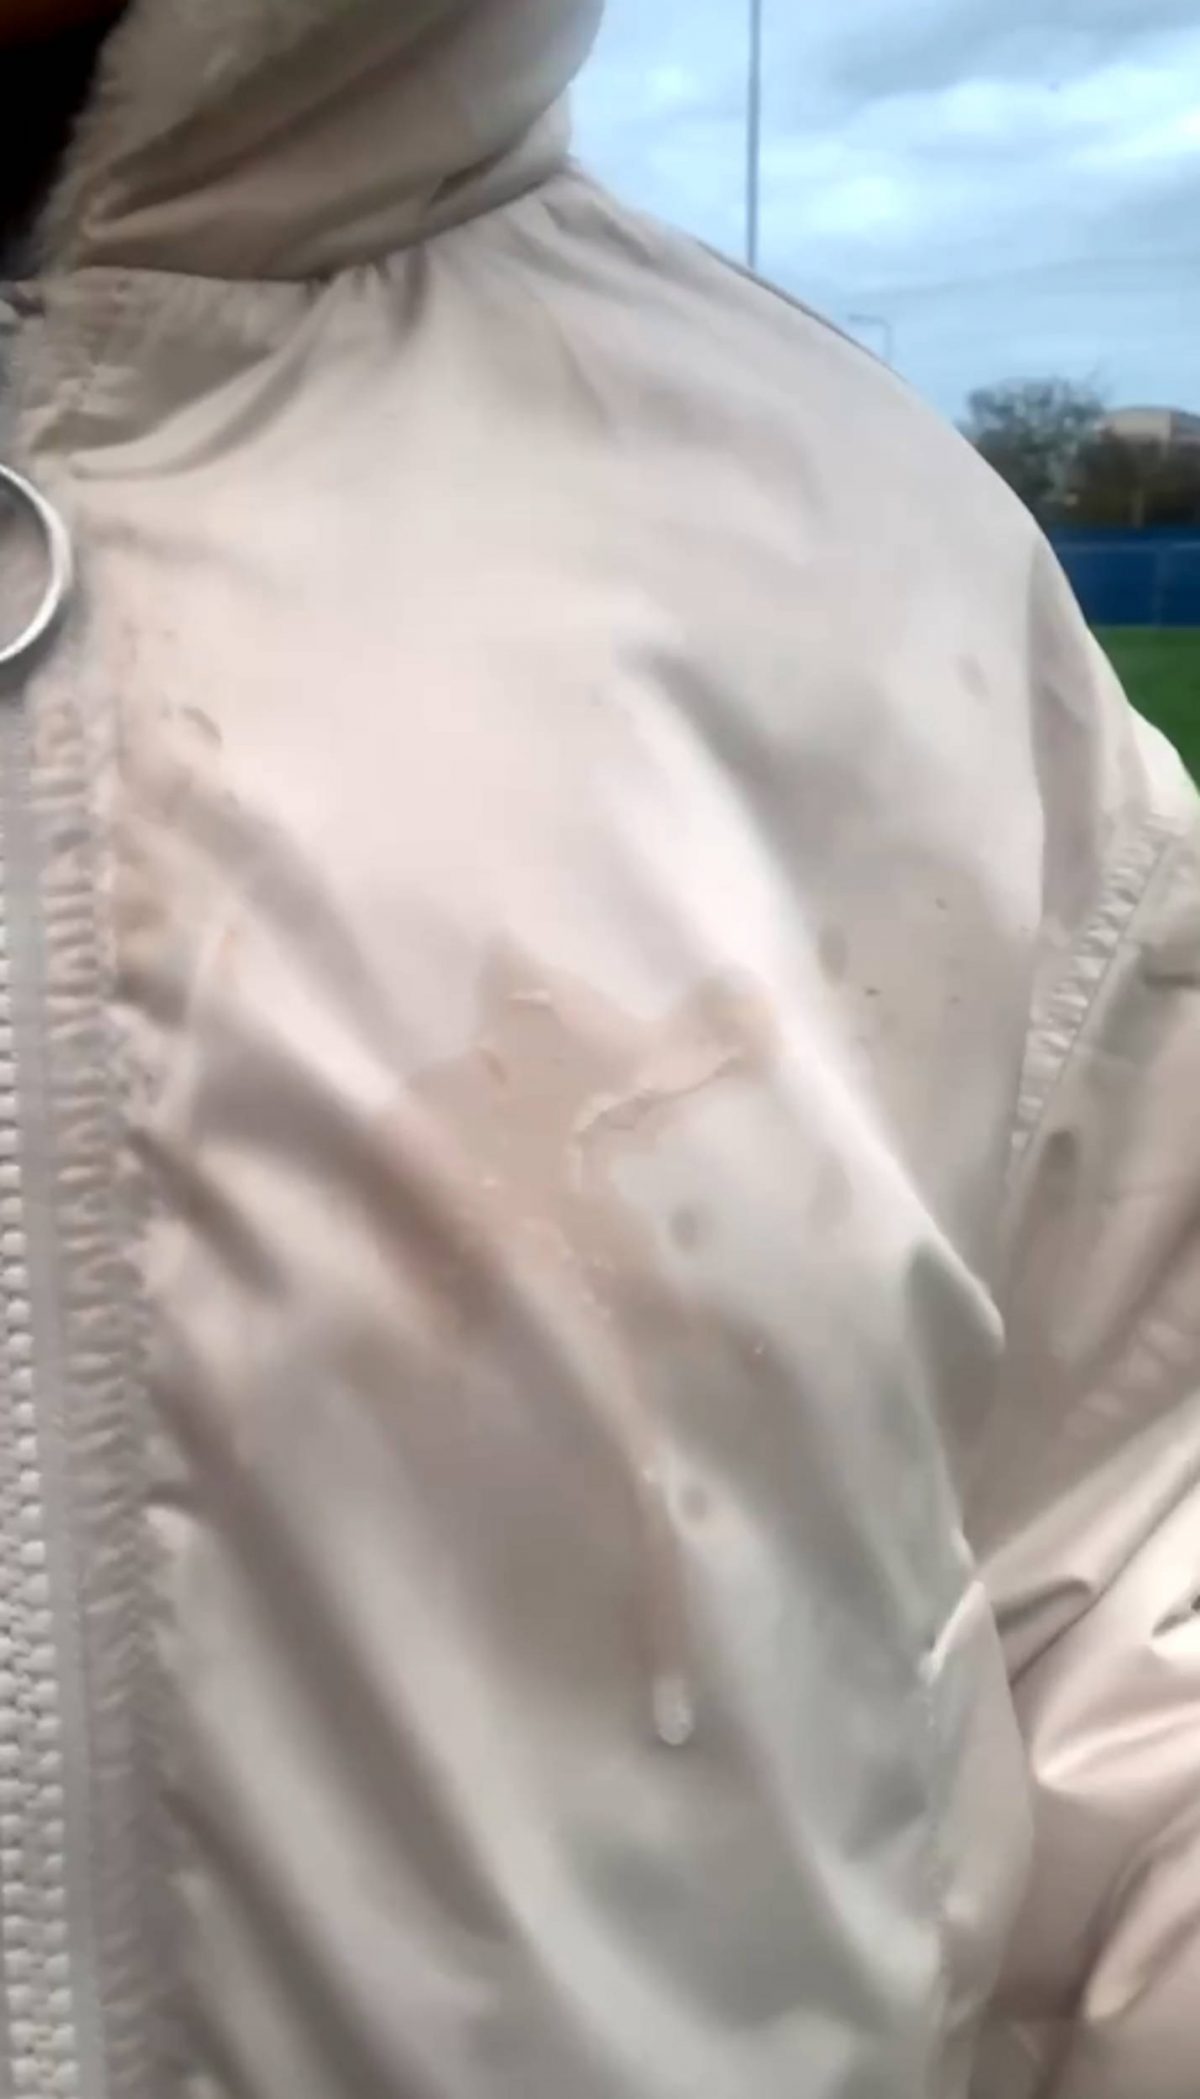 The spit on Yanice's jacket